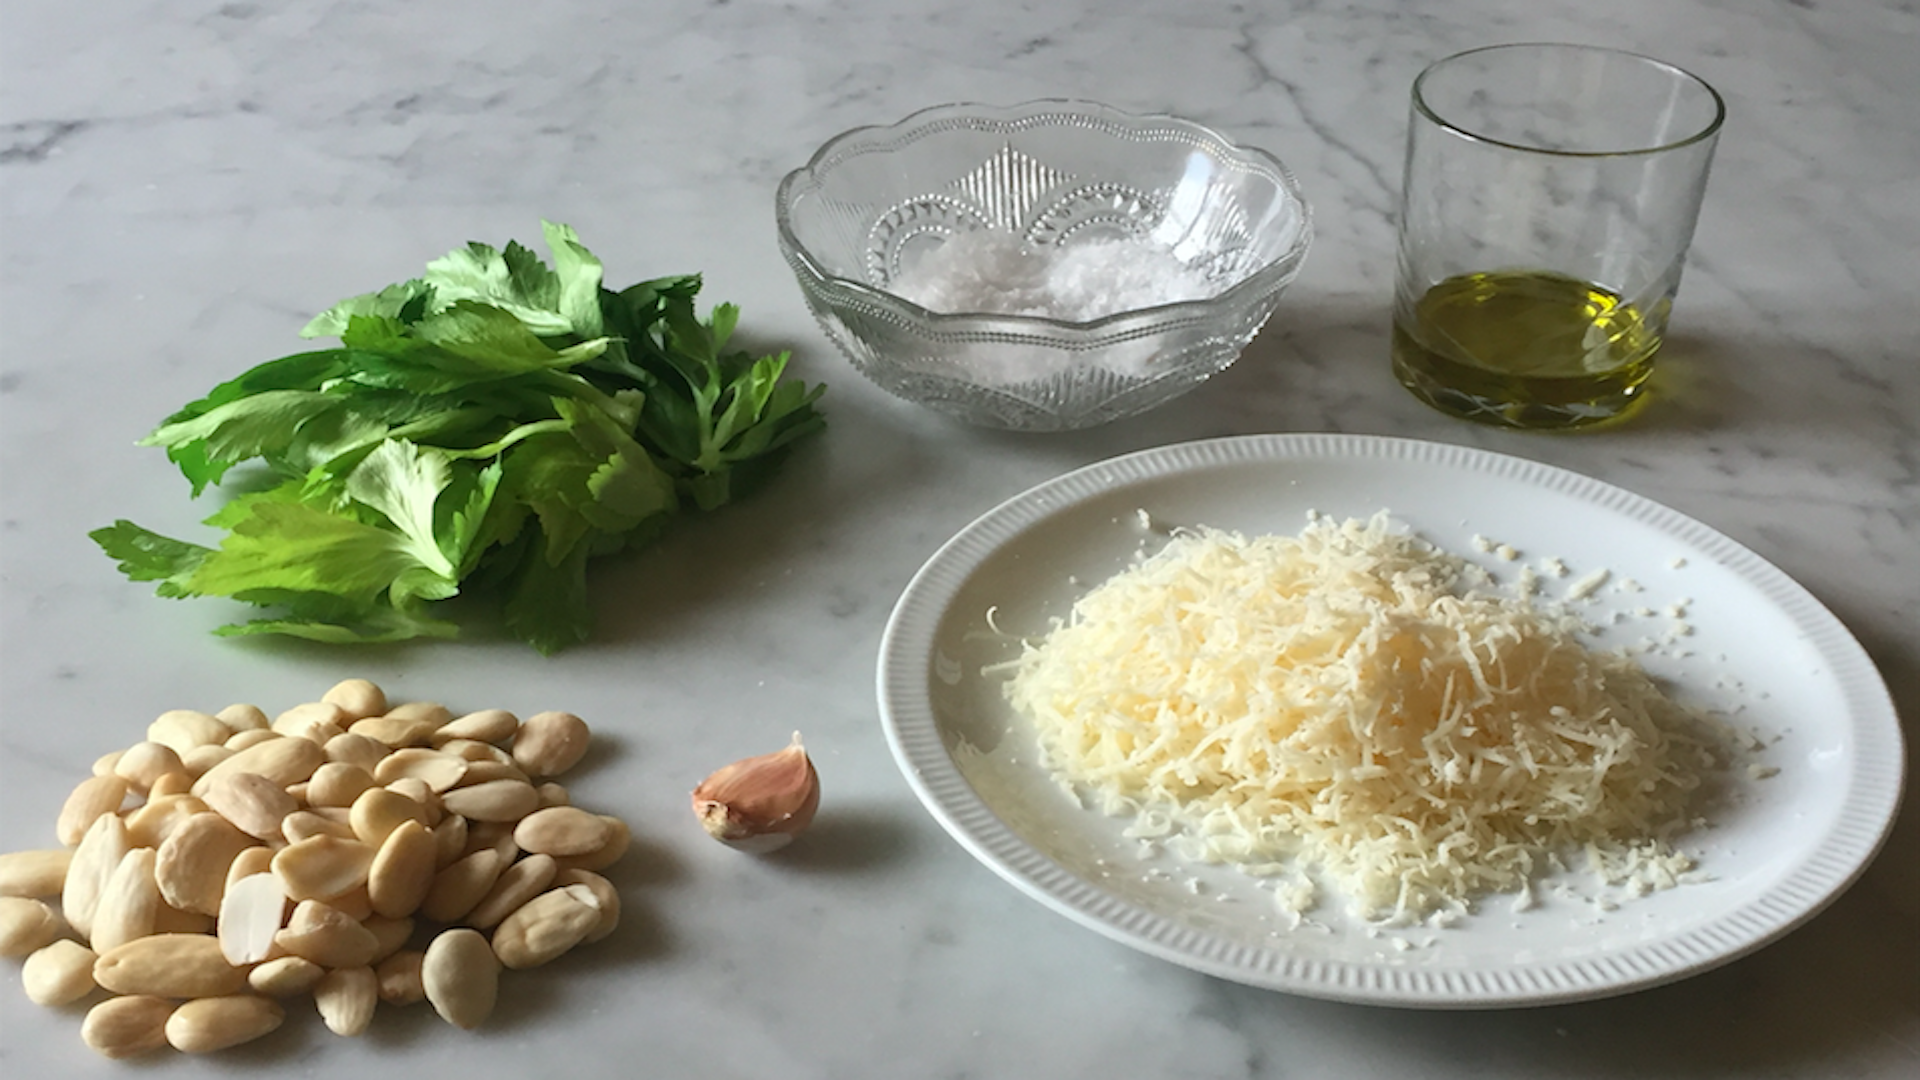 Pesto con foglie di sedano: ingredienti e preparazione - Riciblog